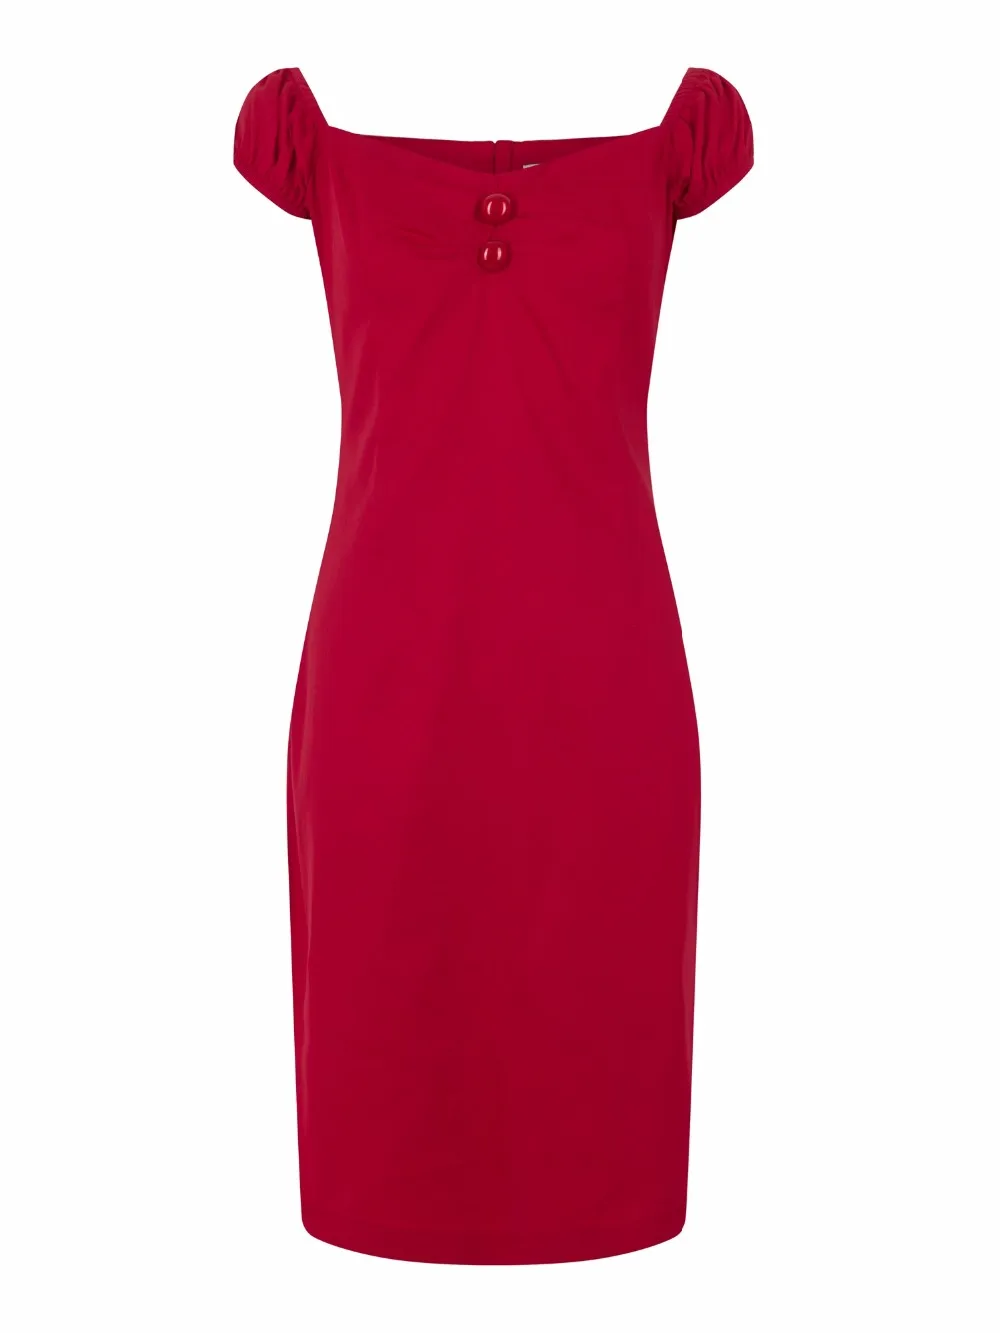 Vestido De Lápiz Rojo,Nuevo Diseño De - Buy Vestido Lápiz,Sexy Vestido Rojo,Vestido De Diseñadores Product on Alibaba.com